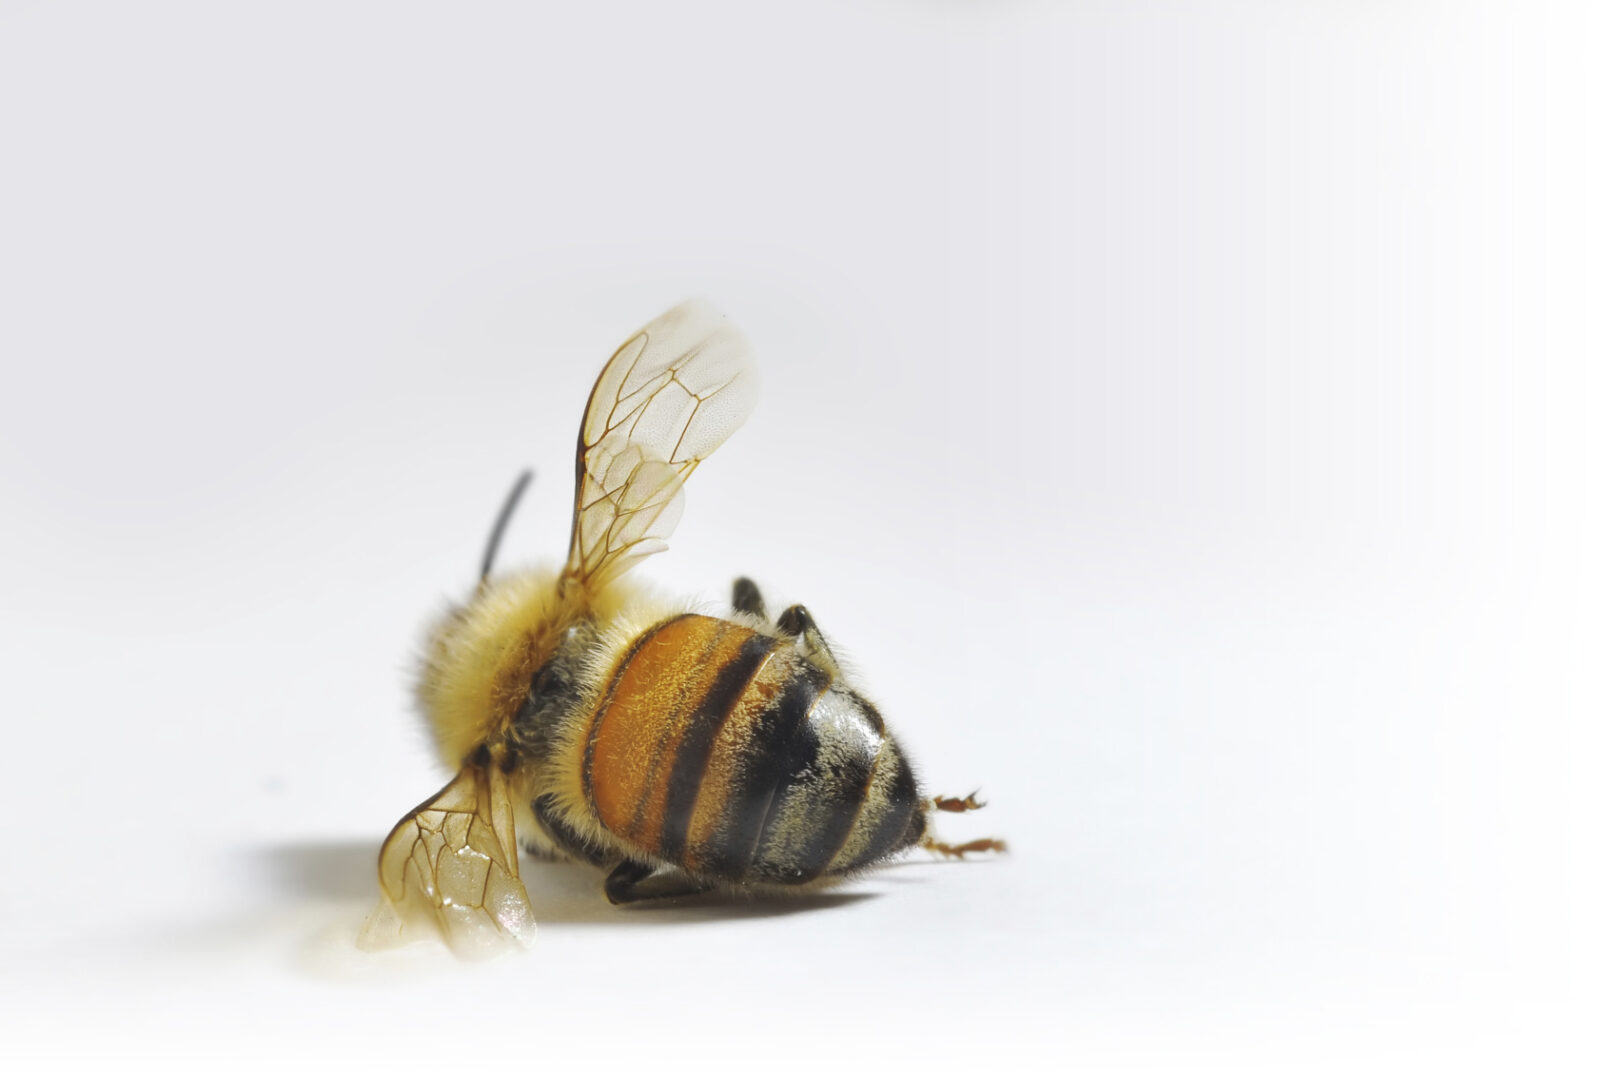 CERAS: Calidad y efecto sobre la salud de las abejas.